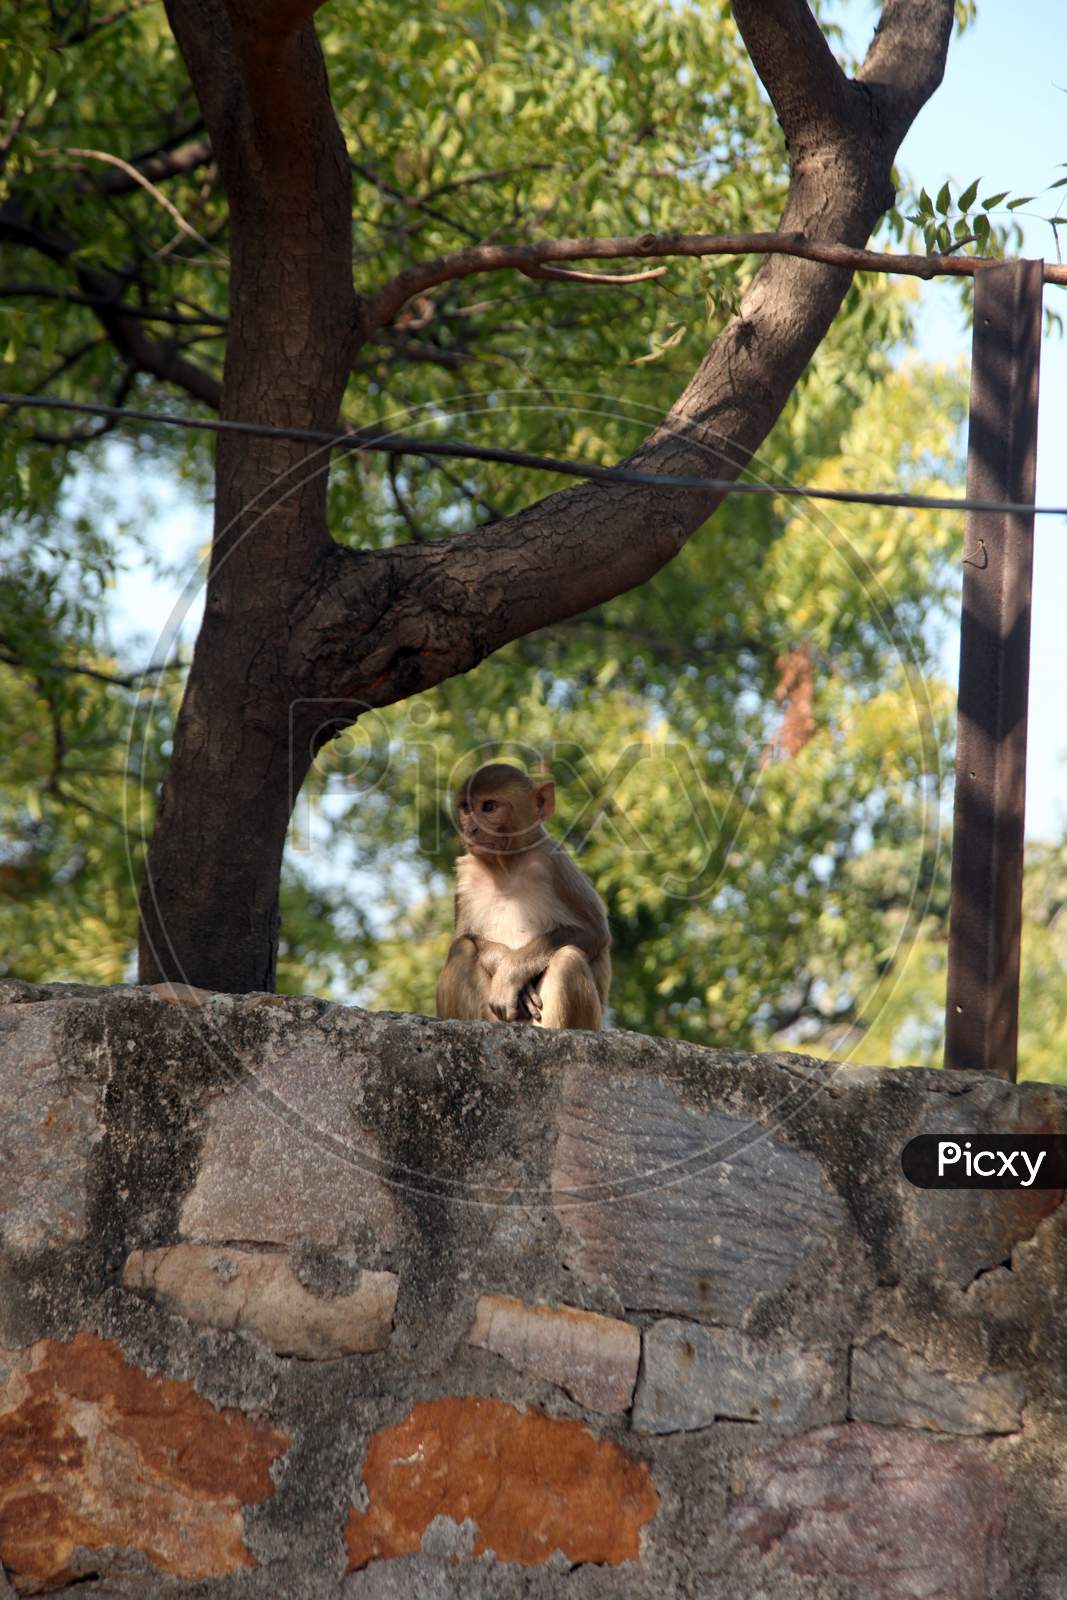 A Monkey on a Wall